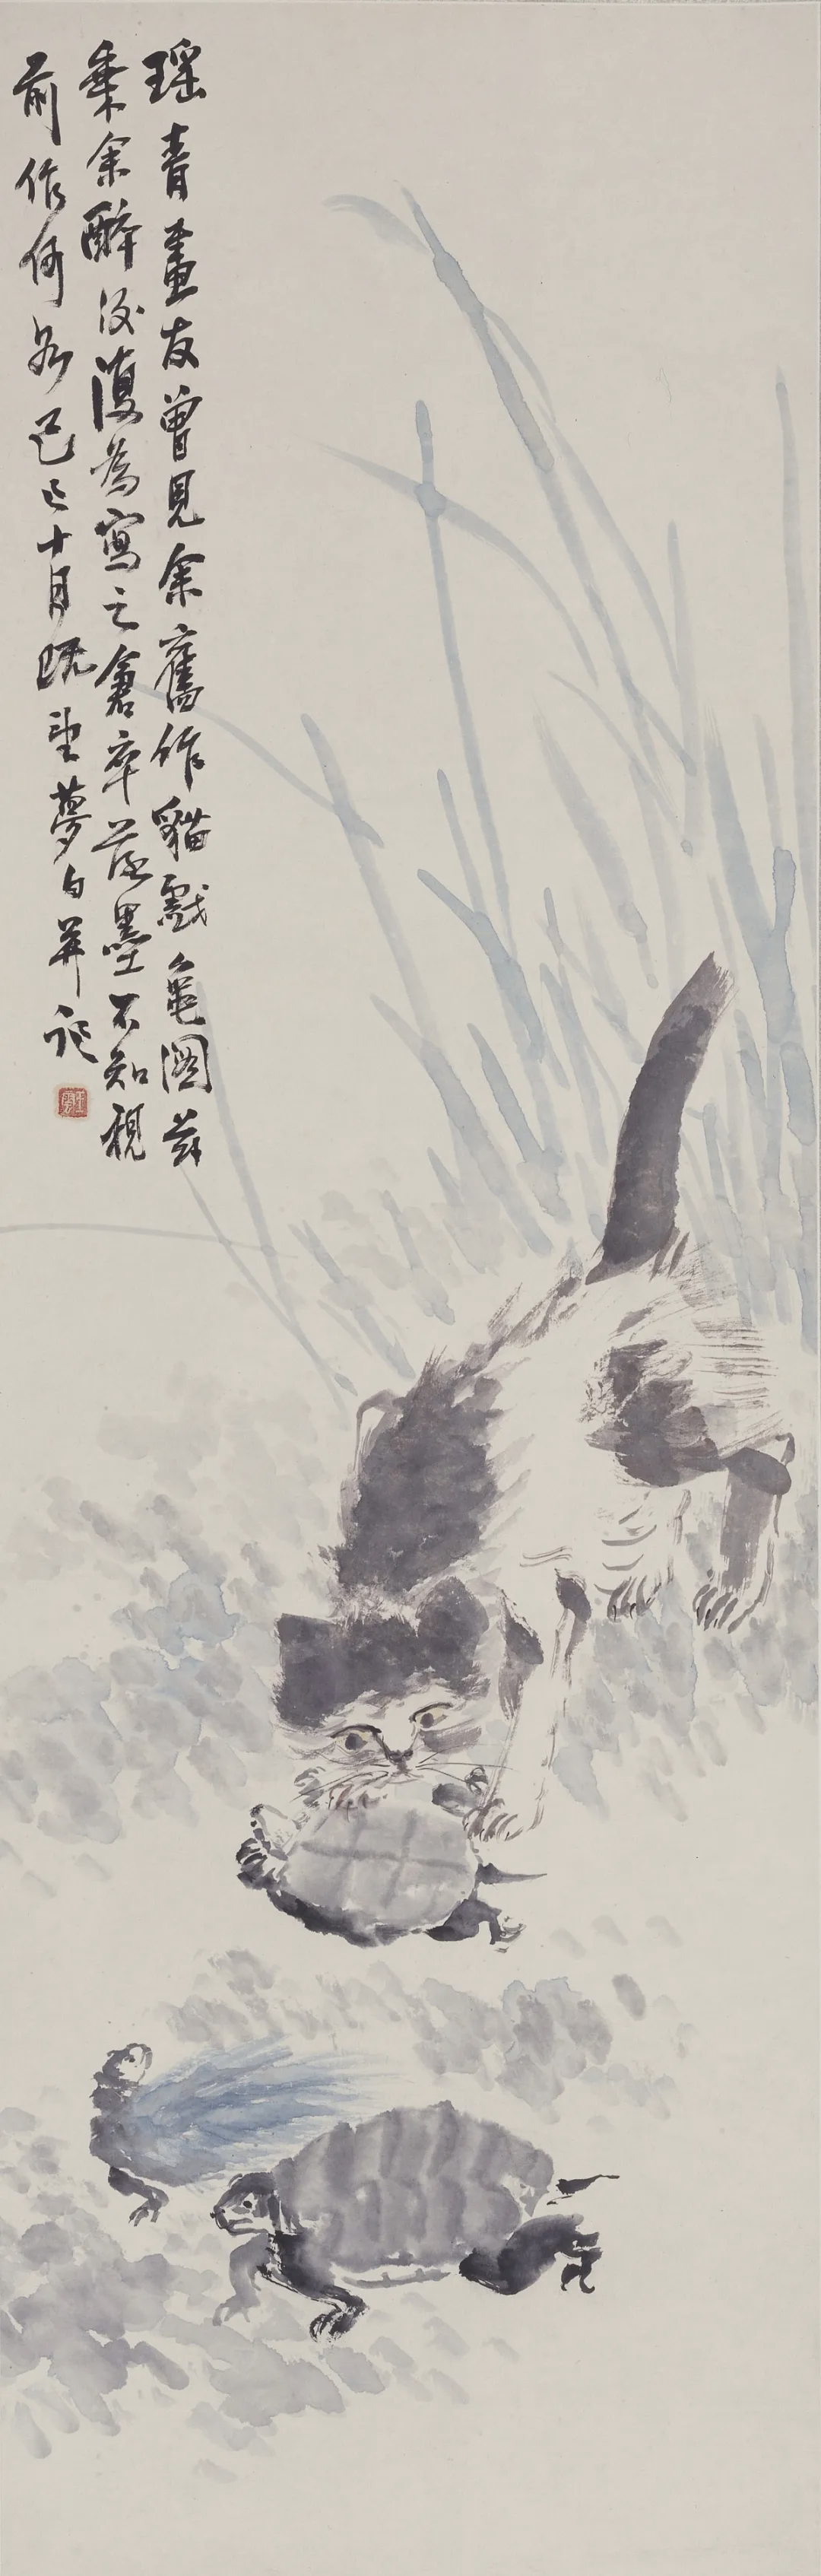 猫戏龟图 王梦白  130cm×42cm 纸本设色 1929年